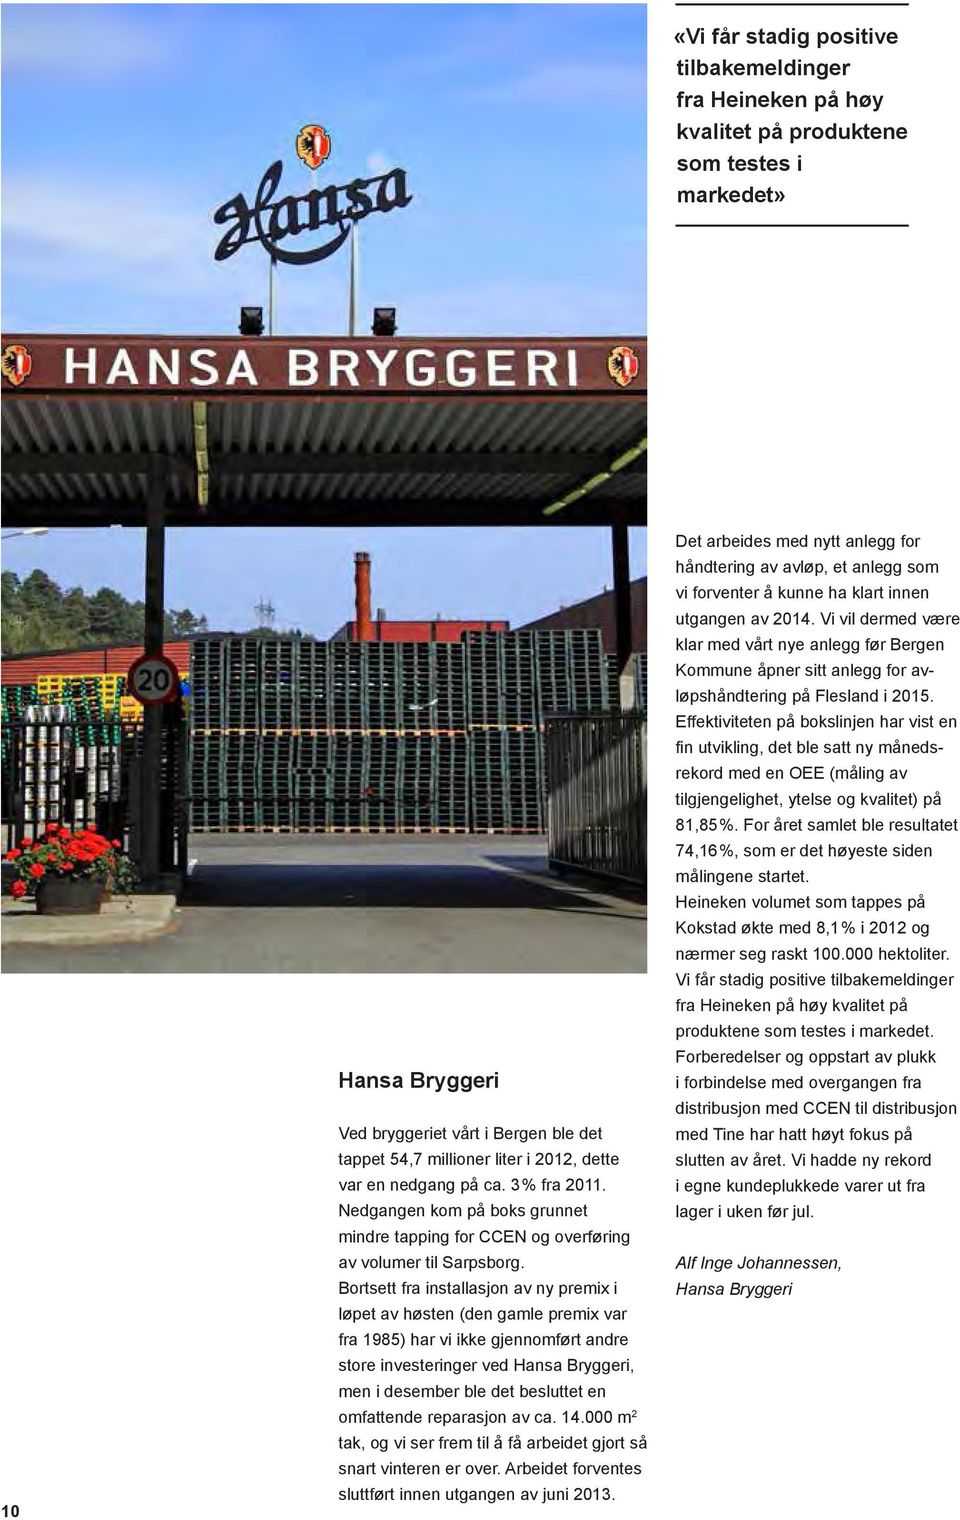 Bortsett fra installasjon av ny premix i løpet av høsten (den gamle premix var fra 1985) har vi ikke gjennomført andre store investeringer ved Hansa Bryggeri, men i desember ble det besluttet en